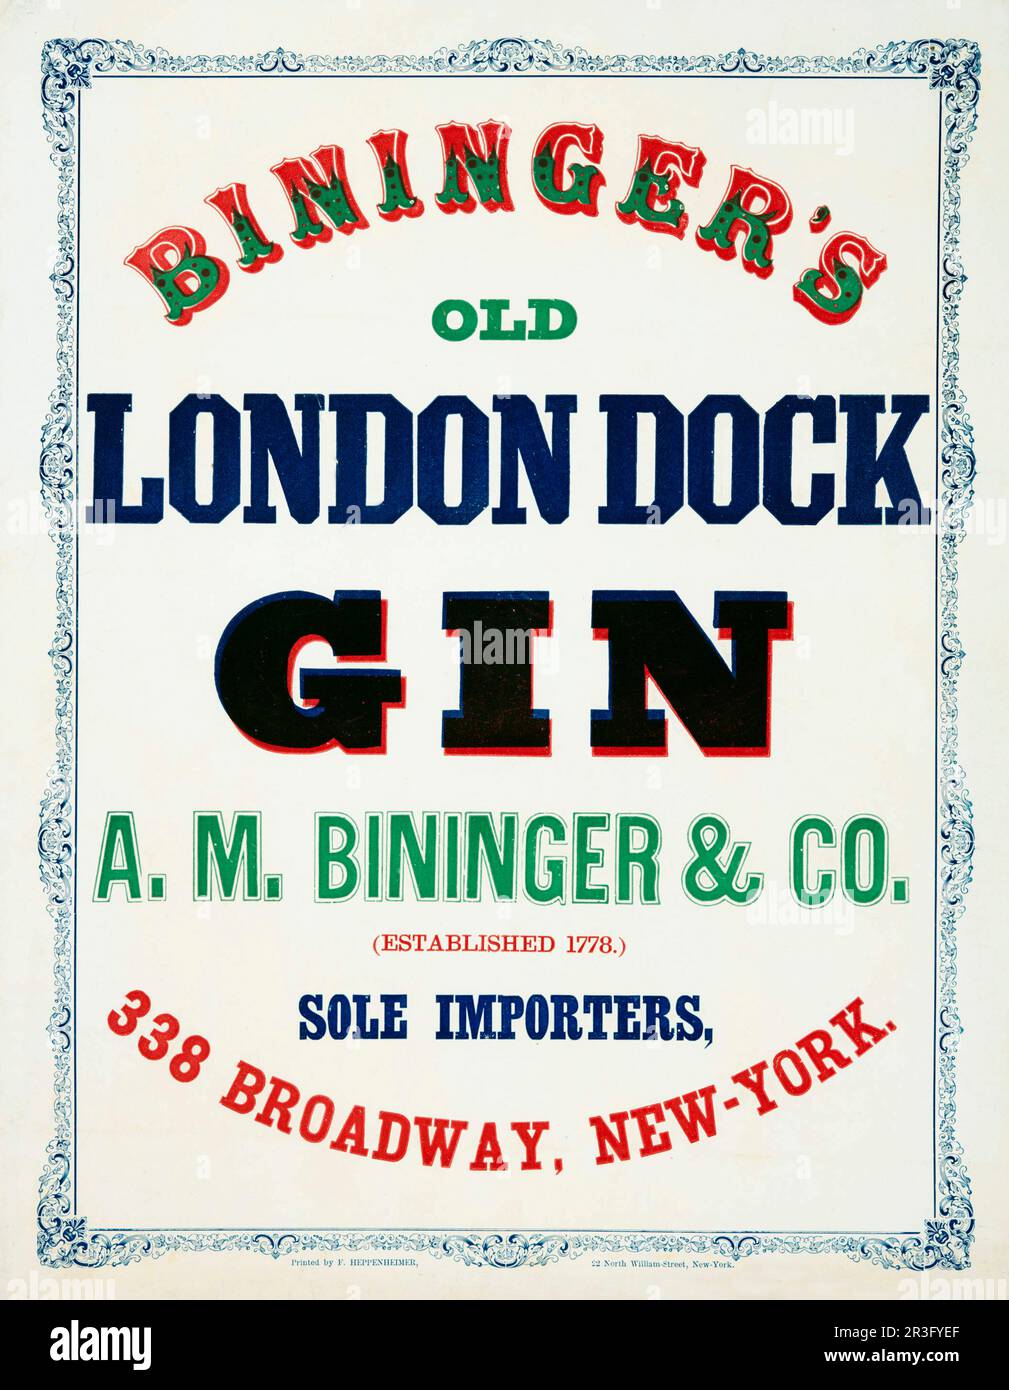 Publicité vintage pour le vieux gin de quai de Bininger, avec une bordure de scrollwork. Banque D'Images